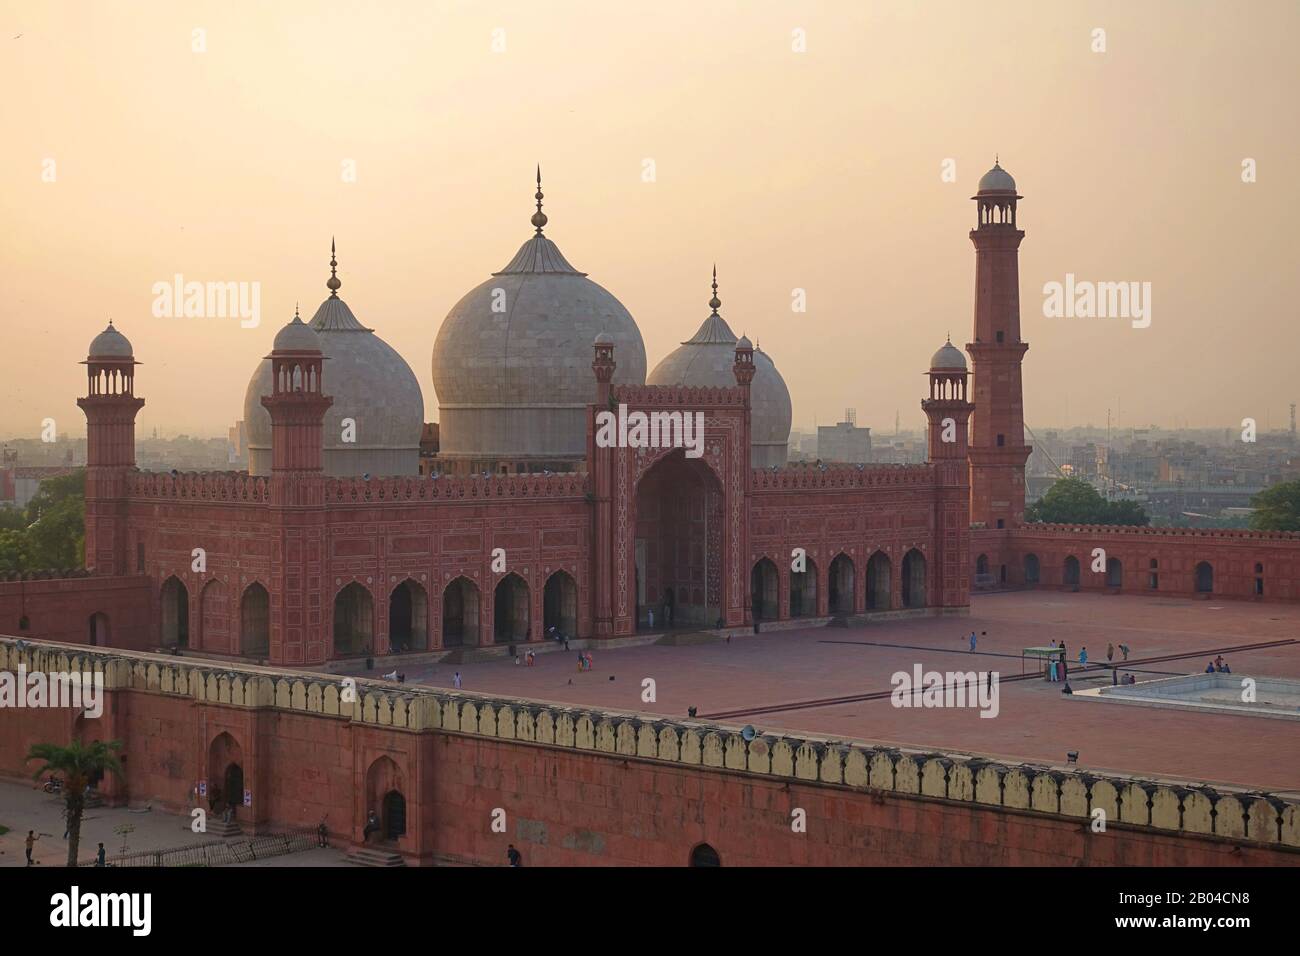 Les dômes de la mosquée Badshahi (Mosquée de l'empereur ) construit en 1673 par l'empereur moghol Aurangzeb à Lahore, au Pakistan. Banque D'Images